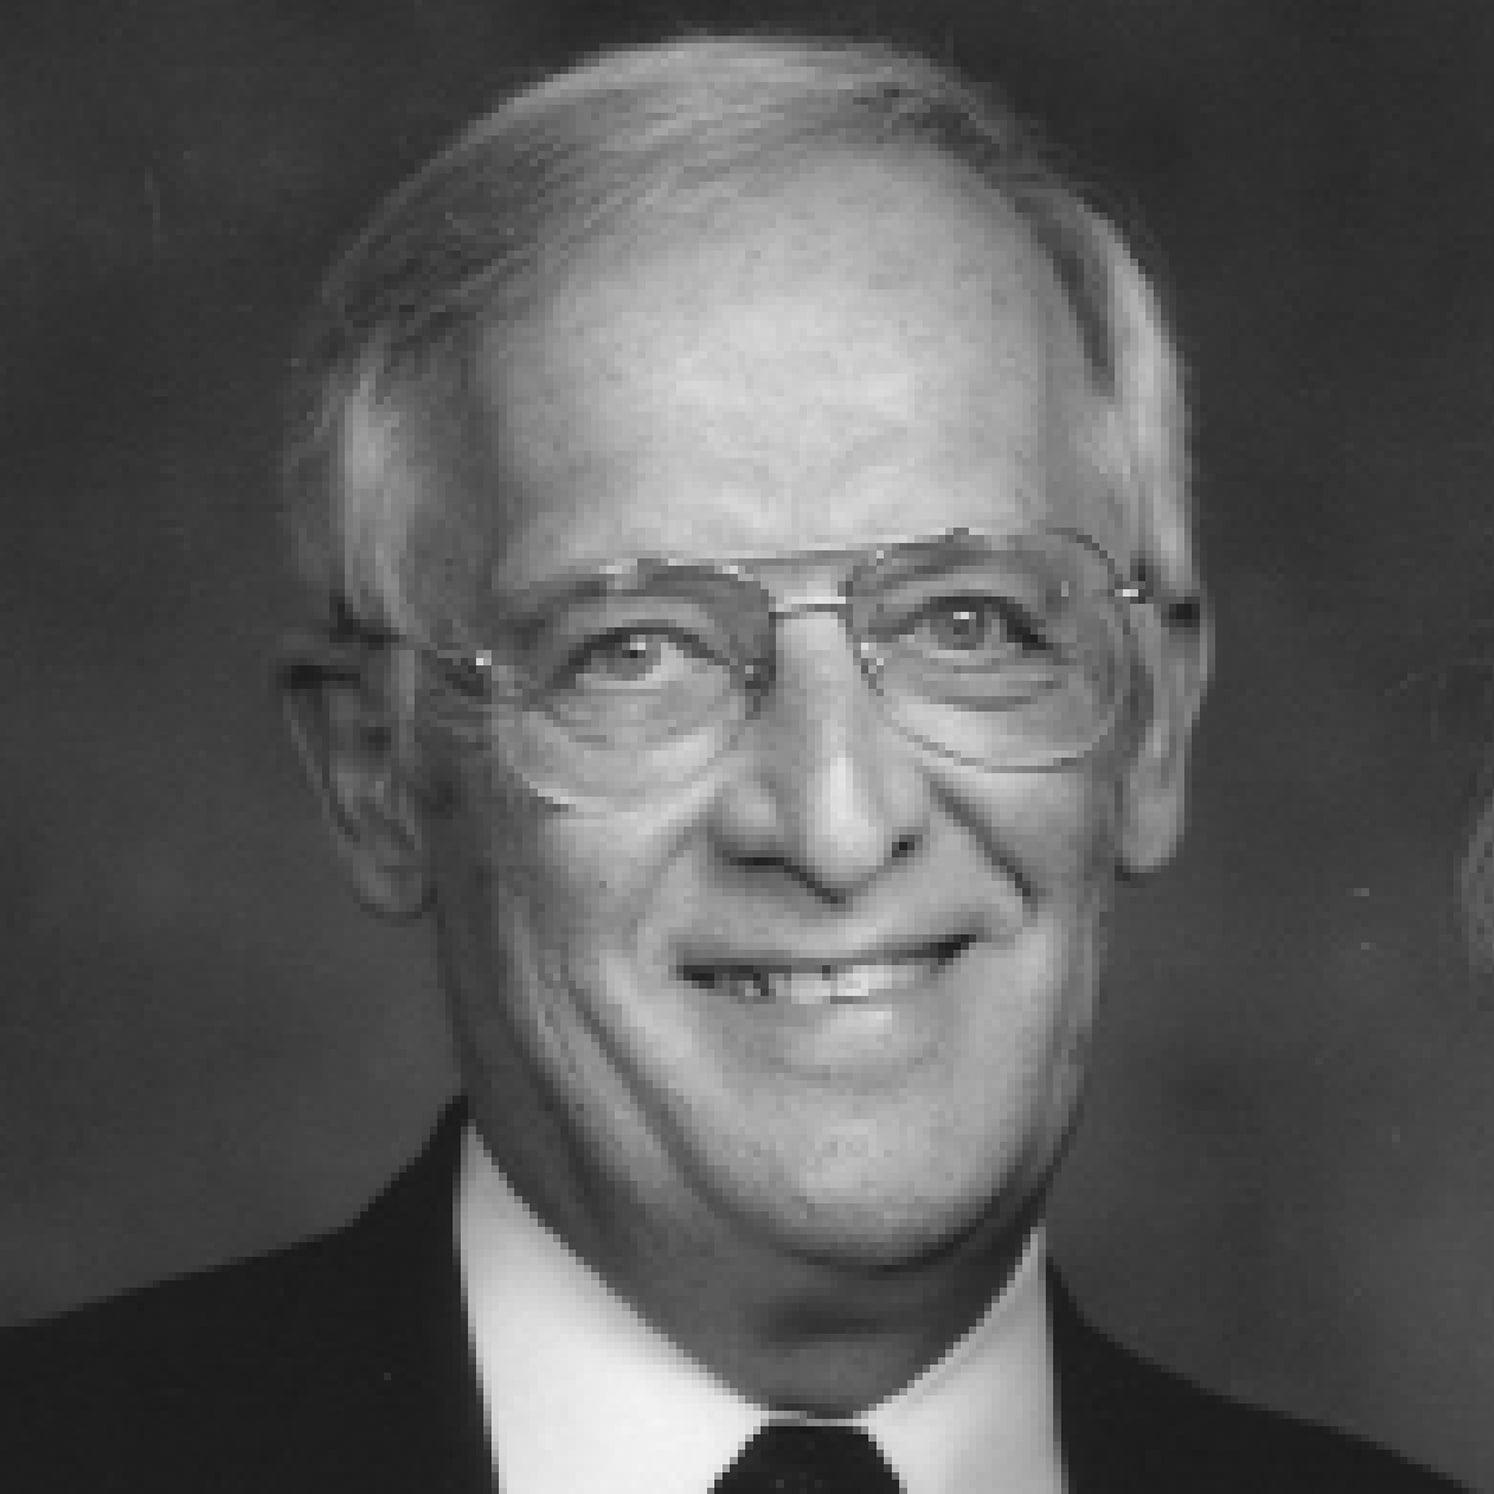 Dr. Gene E. Likens